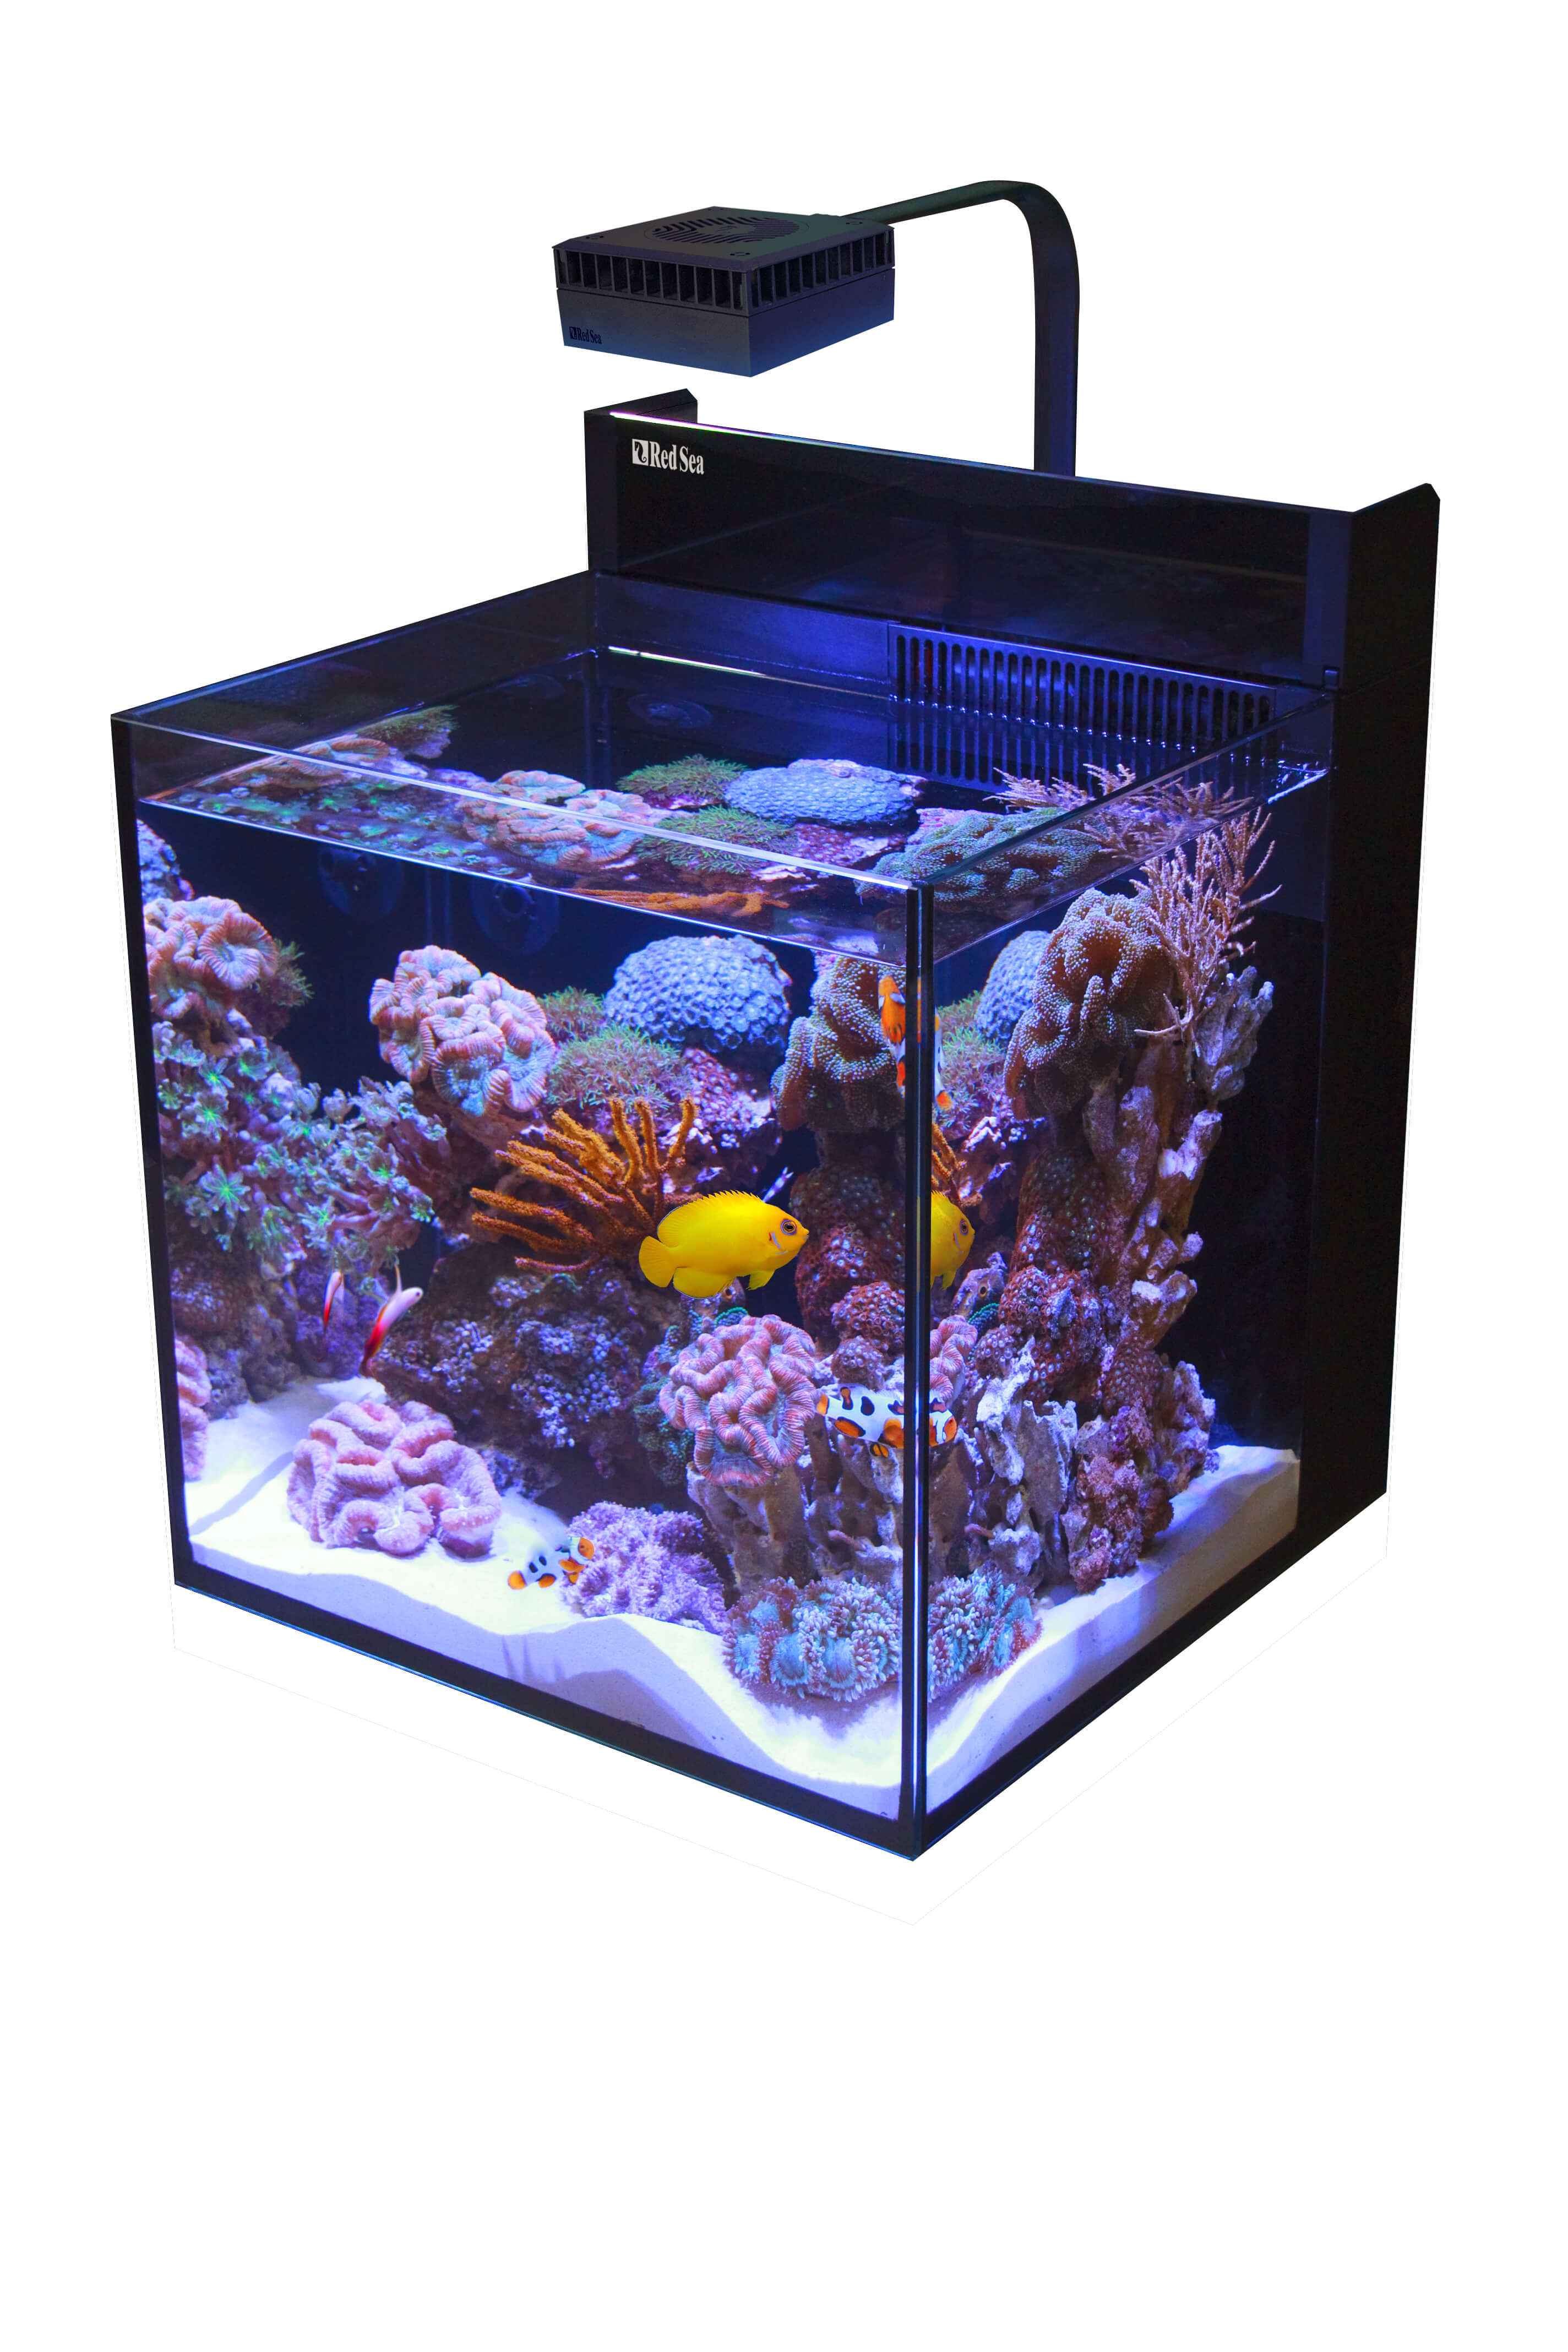 Ce boîtier transforme votre PC en aquarium 